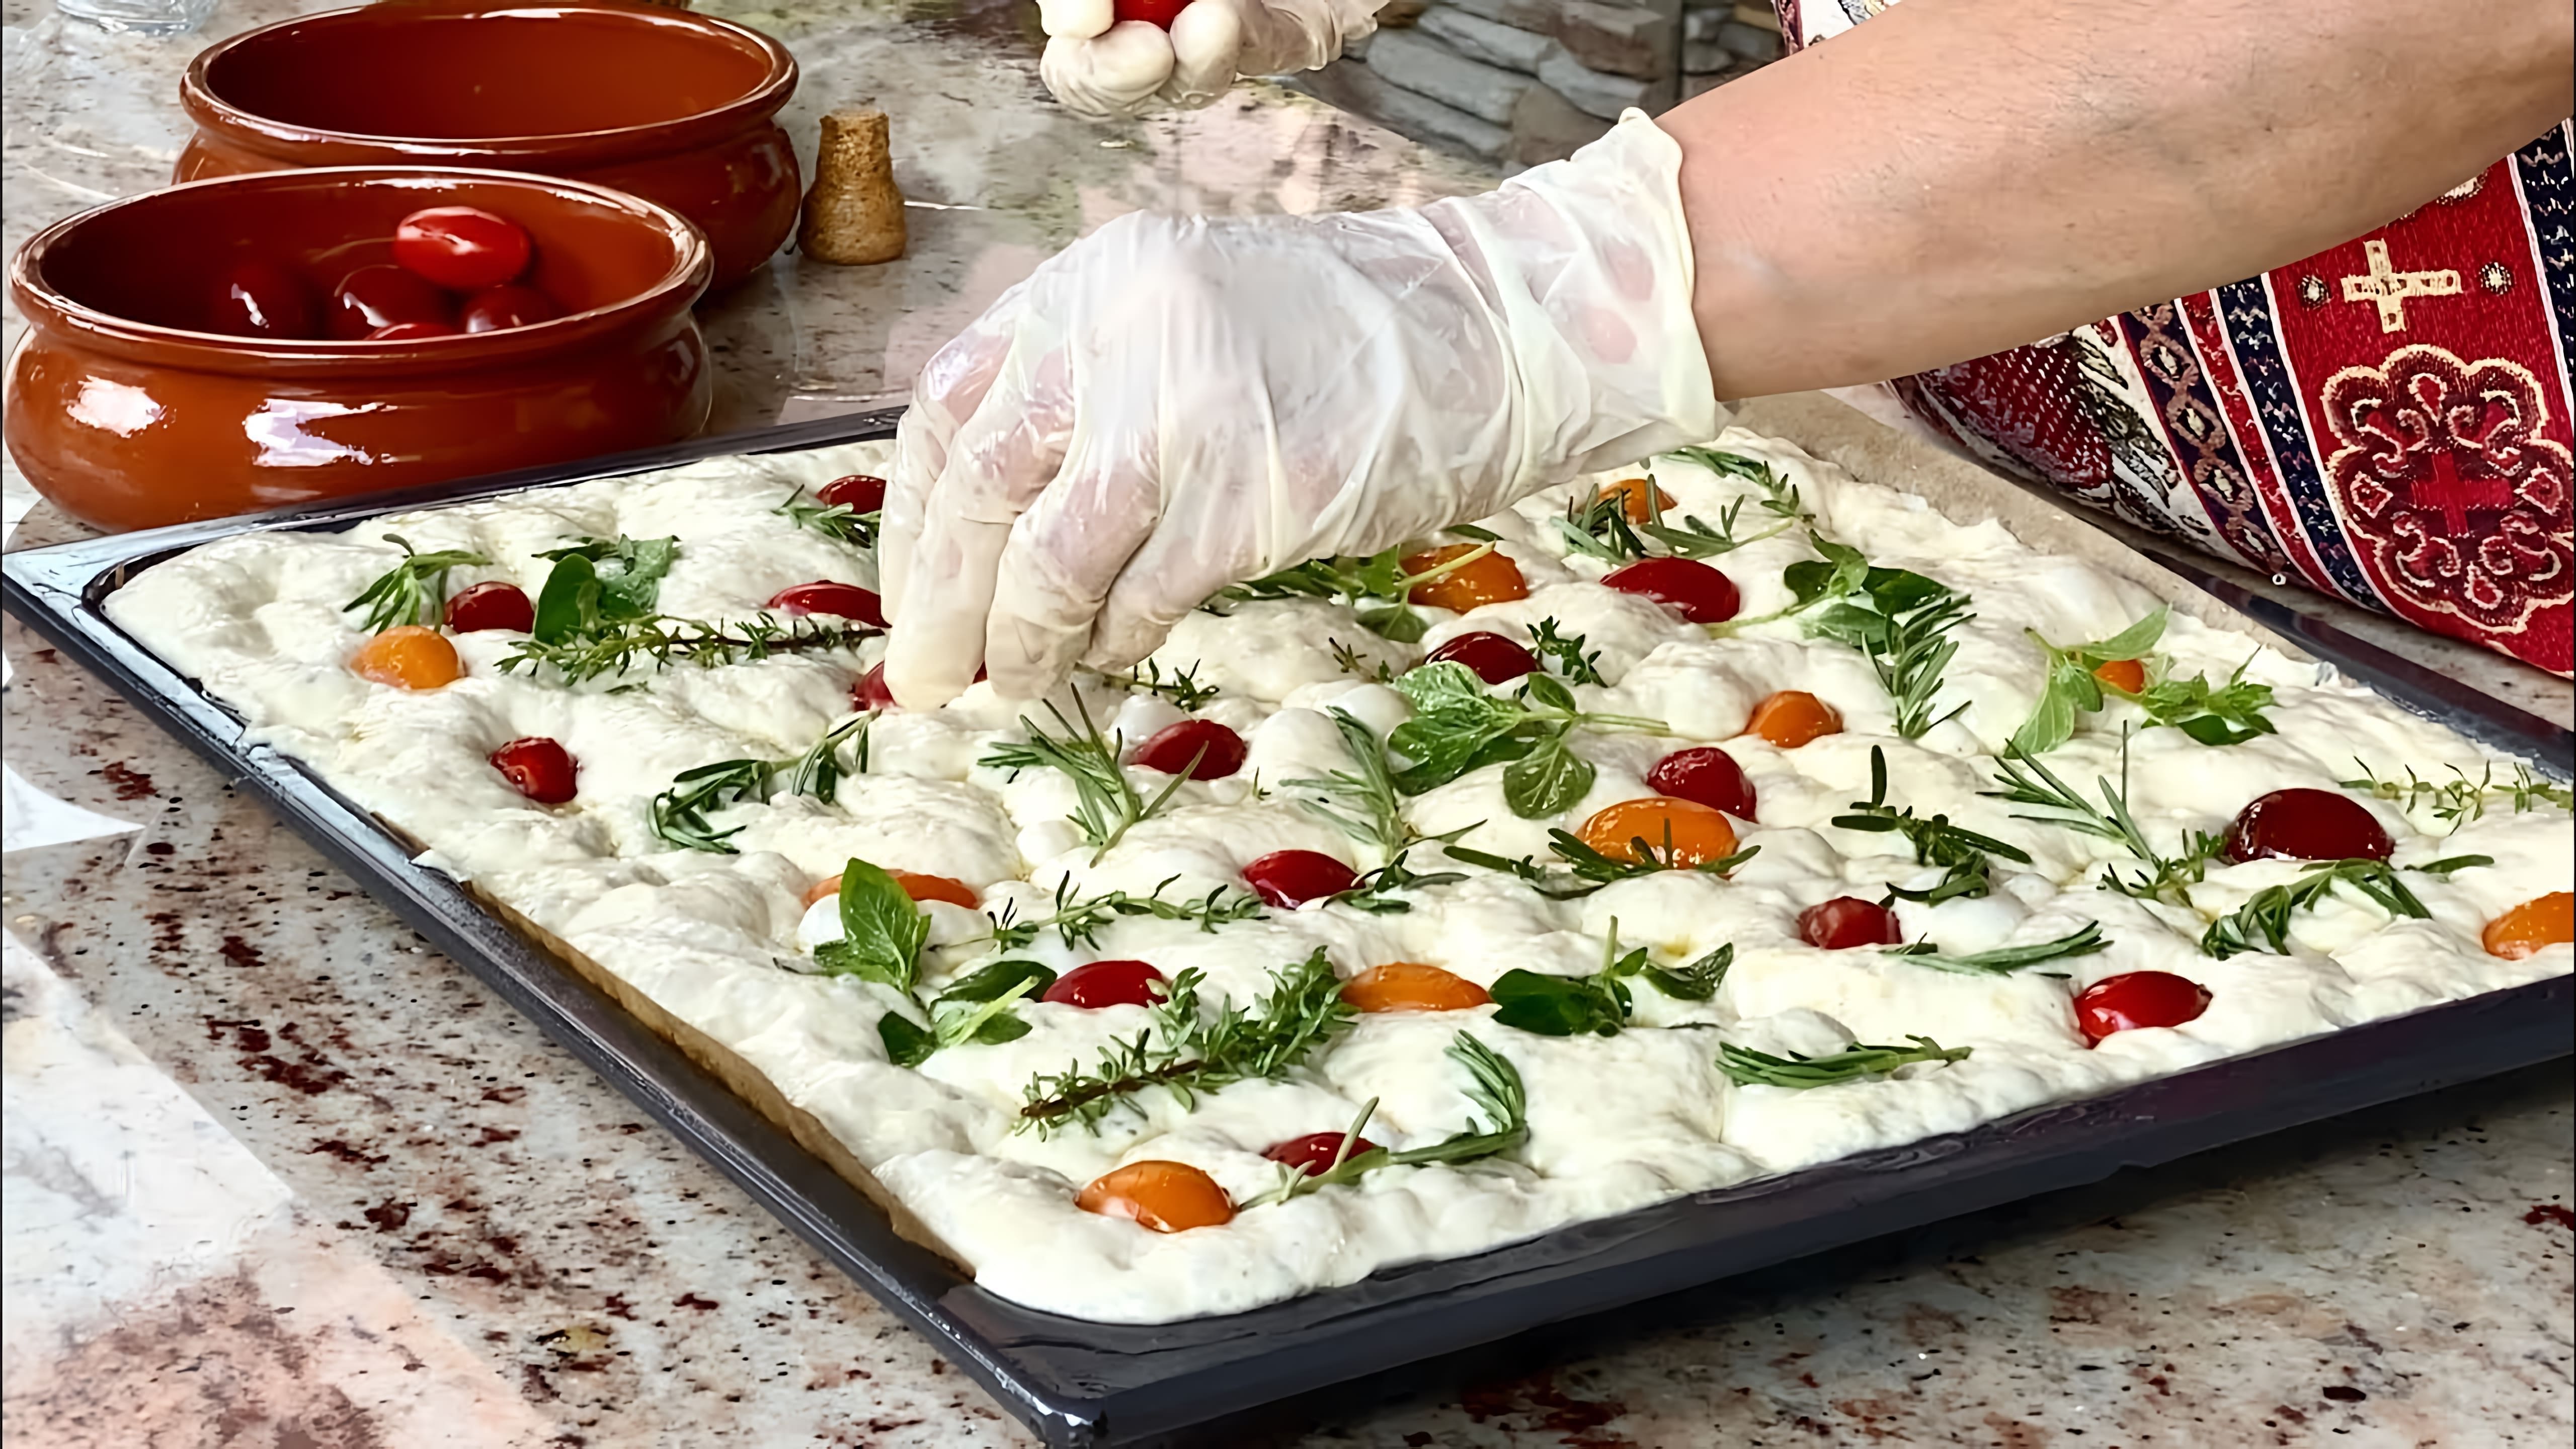 В этом видео девушка показывает, как приготовить итальянскую покачу - хлебный пирог с маслом